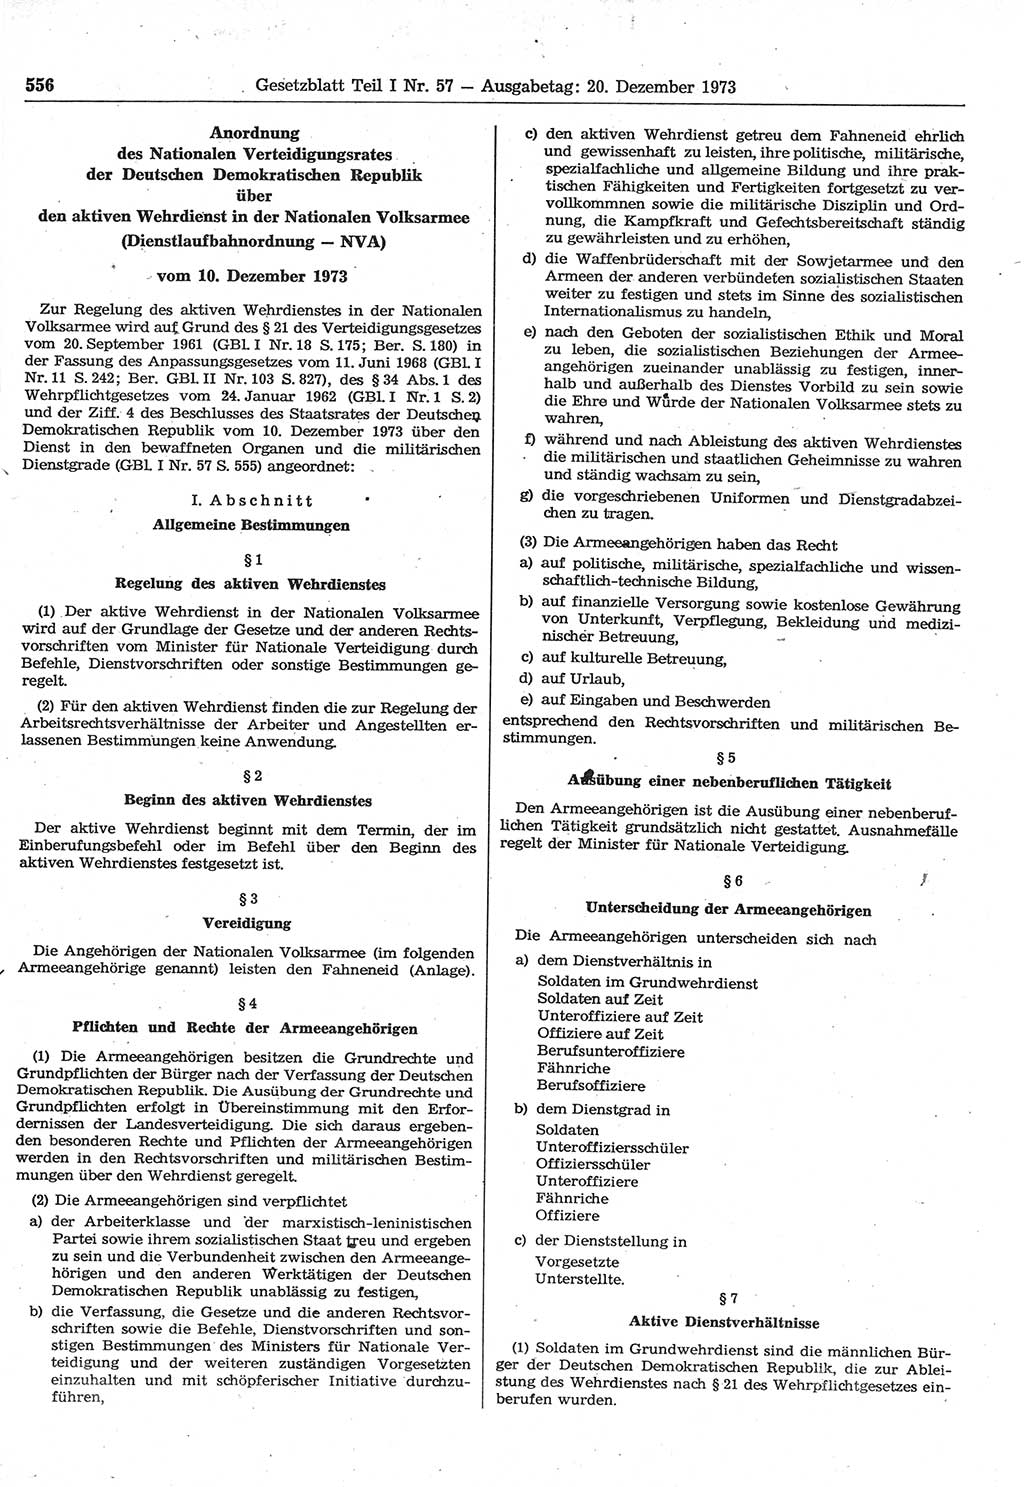 Gesetzblatt (GBl.) der Deutschen Demokratischen Republik (DDR) Teil Ⅰ 1973, Seite 556 (GBl. DDR Ⅰ 1973, S. 556)